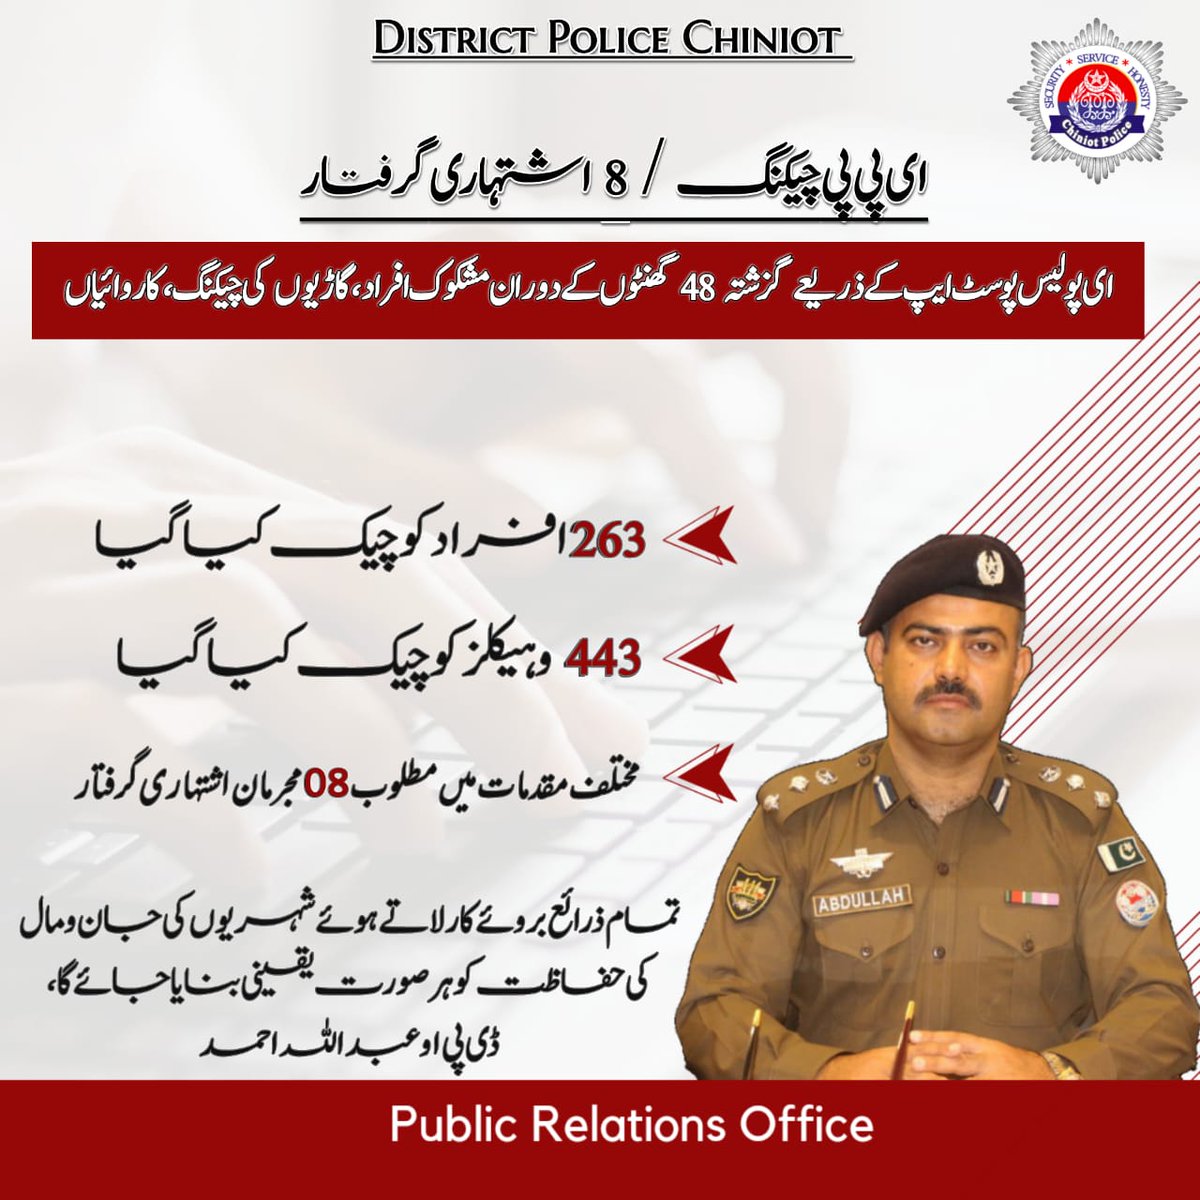 ڈی پی او عبداللہ احمد کی ہدایت پر چنیوٹ پولیس کی جانب سے ای پولیس پوسٹ ایپ کے ذریعے مشکوک افراد, مشکوک گاڑیوں کی چیکنگ کا عمل جاری 
#PunjabPolice #ChiniotPolice #AtYourService